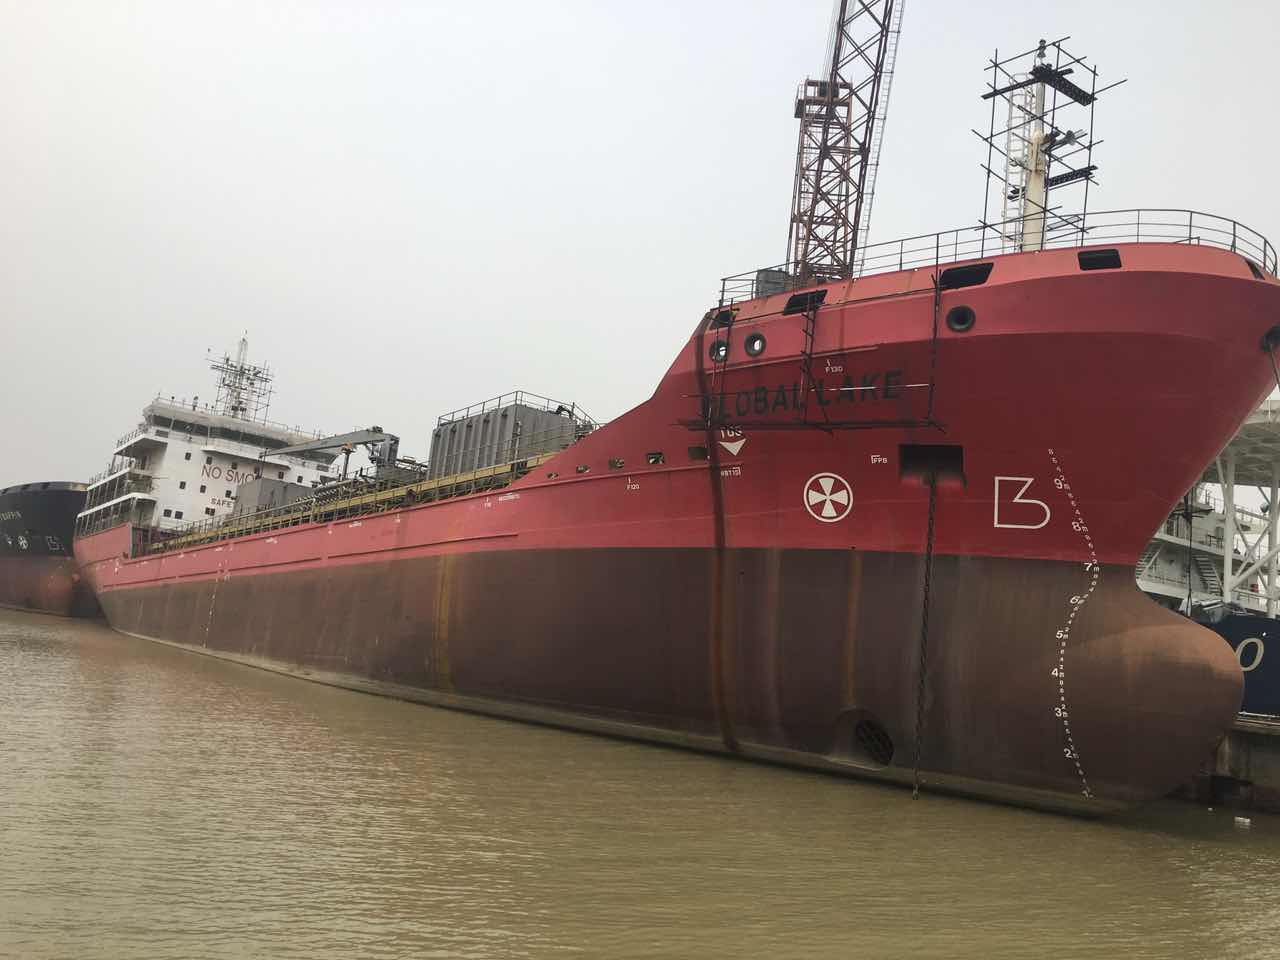 Newbuilding 7500dwt oil/chemical tanker for resale.